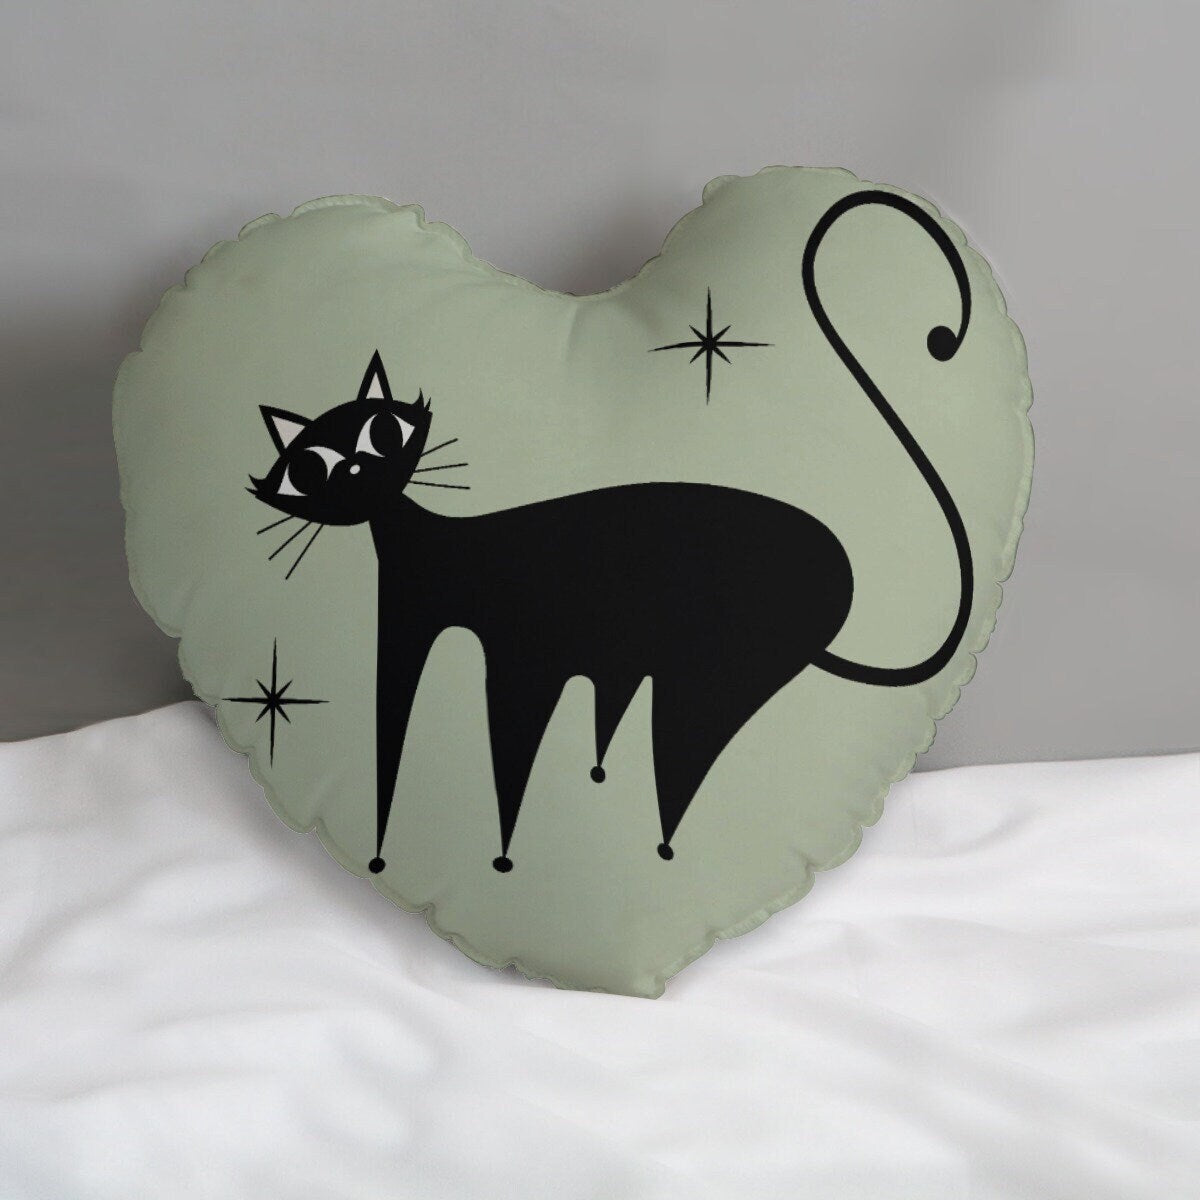 Heart Pillow, Retro Cat Pillow, Mint Green Cat Heart Pillow, 50s Cat Pillow, Heart Shaped Pillow, Decorative Pillow, Heart Accent Pillow